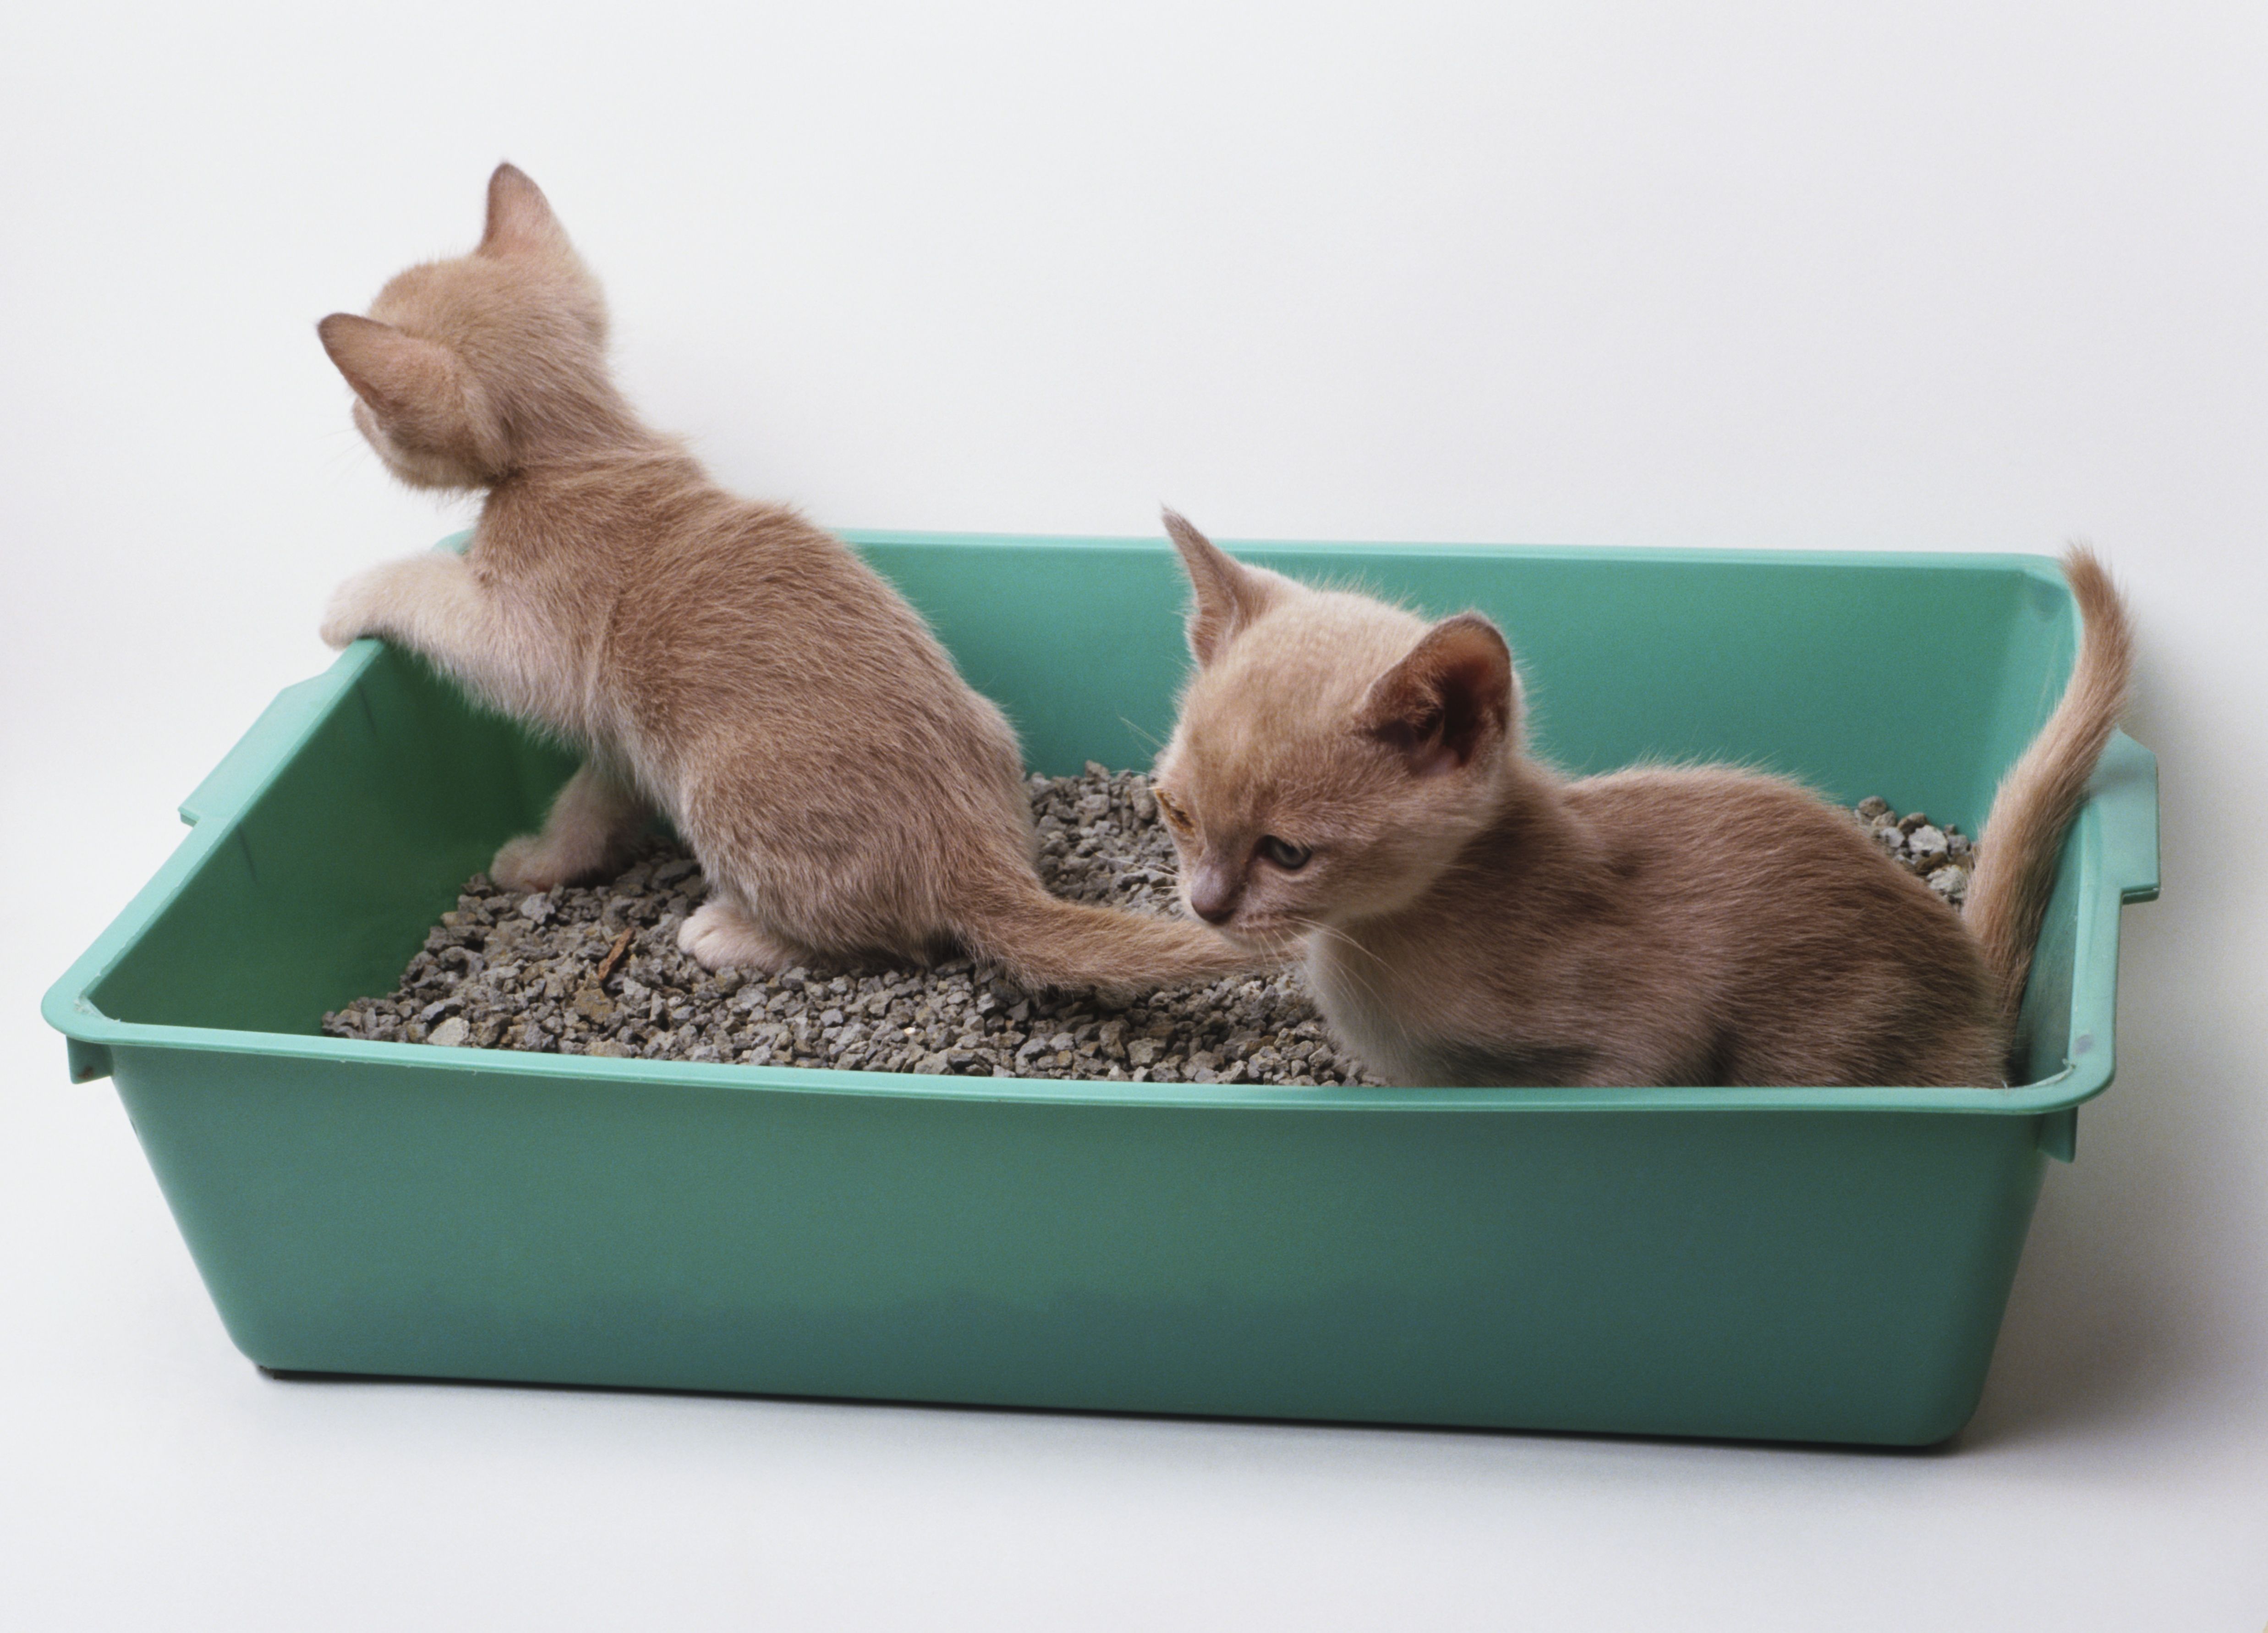 Litter Box Training For Your New Kitten